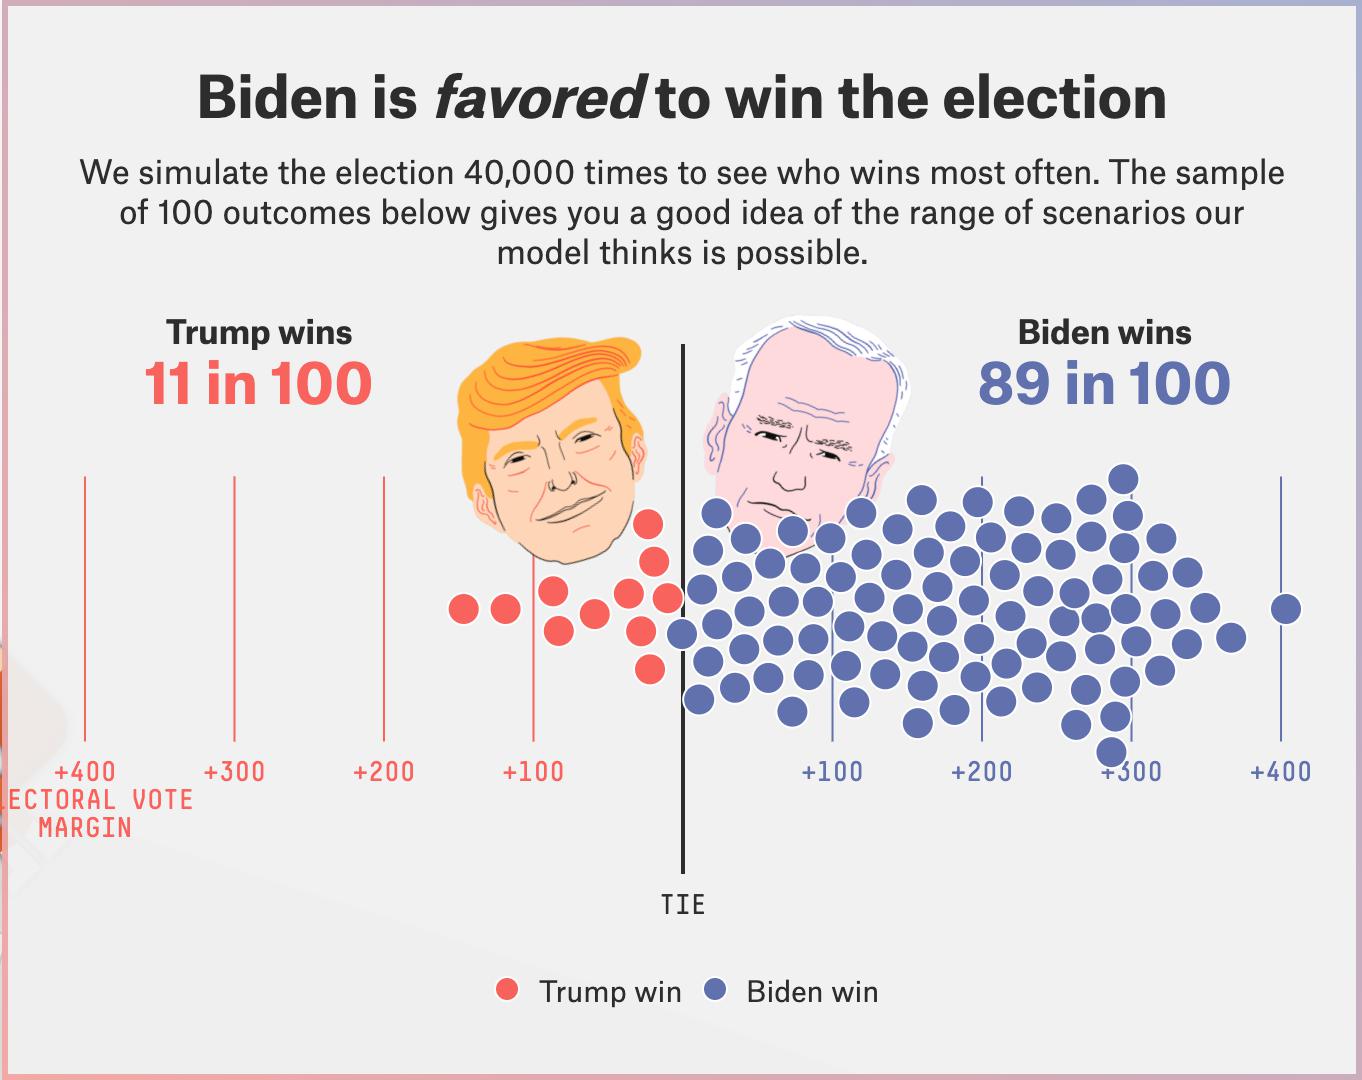 [HOT] Cập nhật TIN NÓNG BẦU CỬ MỸ NĂM 2020 - Ông Biden chỉ còn cách ghế Tổng thống 6 phiếu bầu!!!!